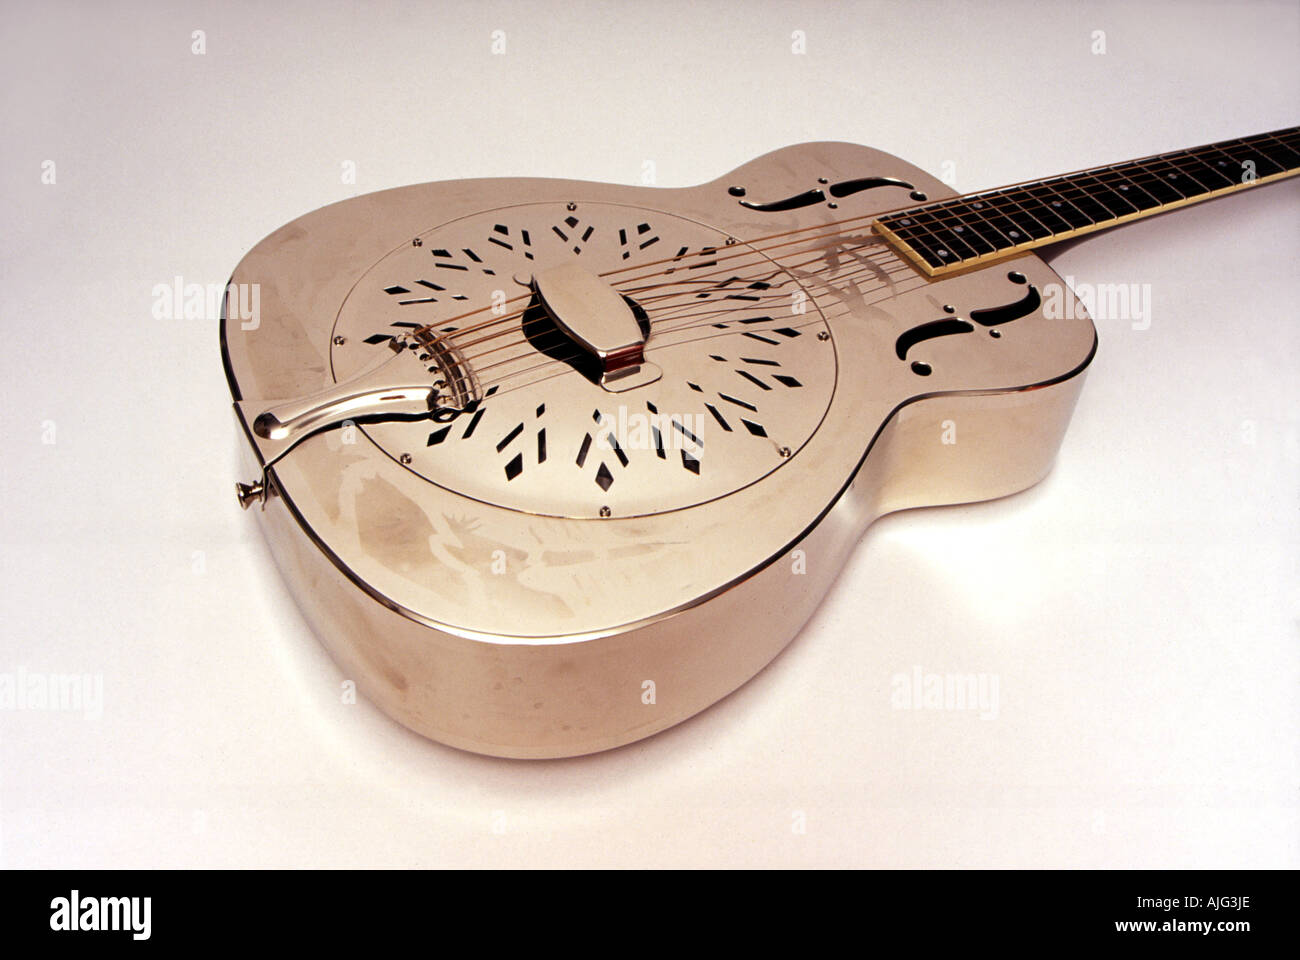 Chitarra a metà degli anni Trenta in stile risonatore o un modello simile a quello svolto da Mark Knopfler Foto Stock